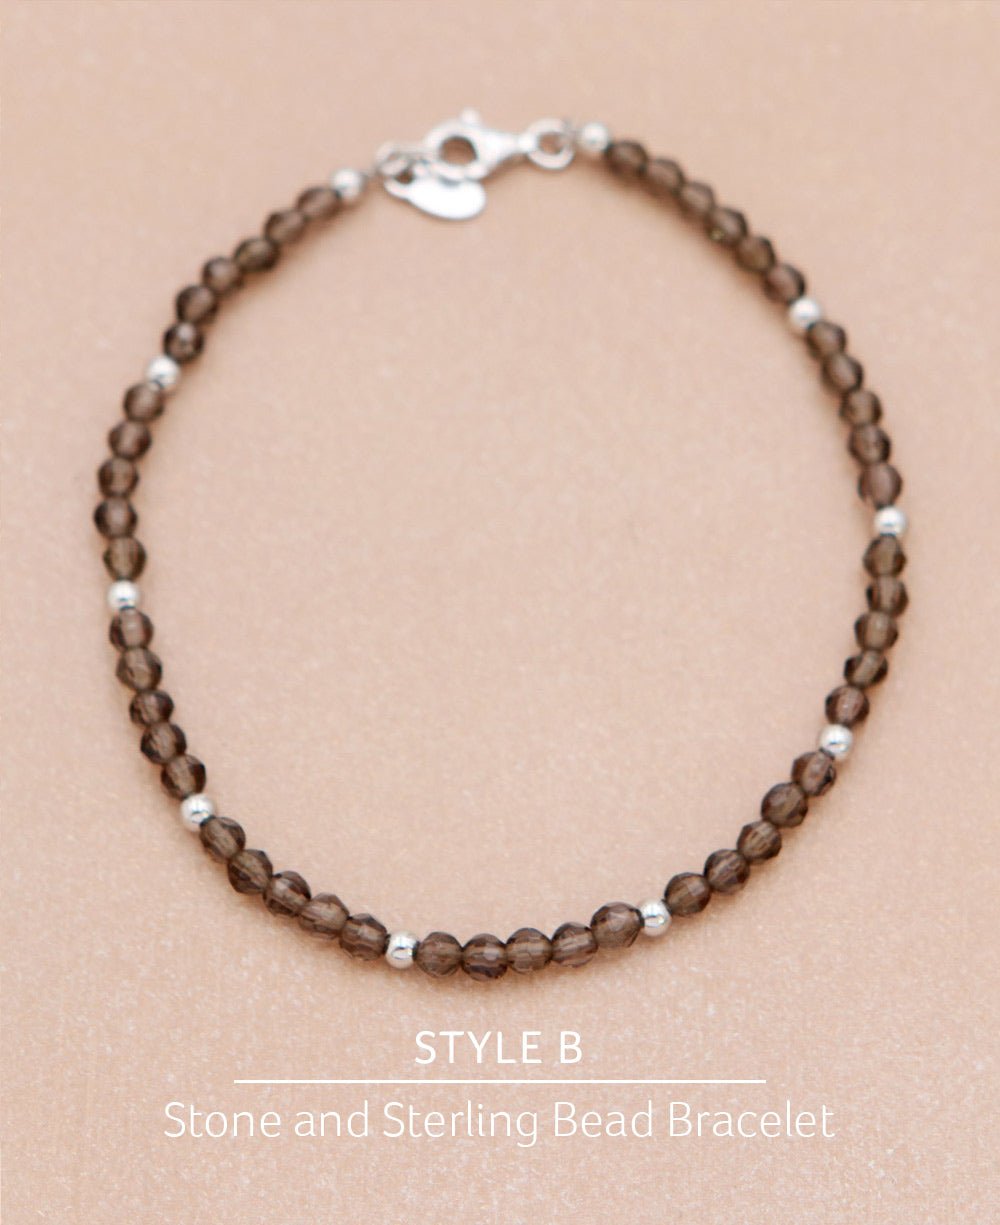 Smoky Quartz Crystal Energy Bracelets, Multiple Styles - Bracelets - Style A -